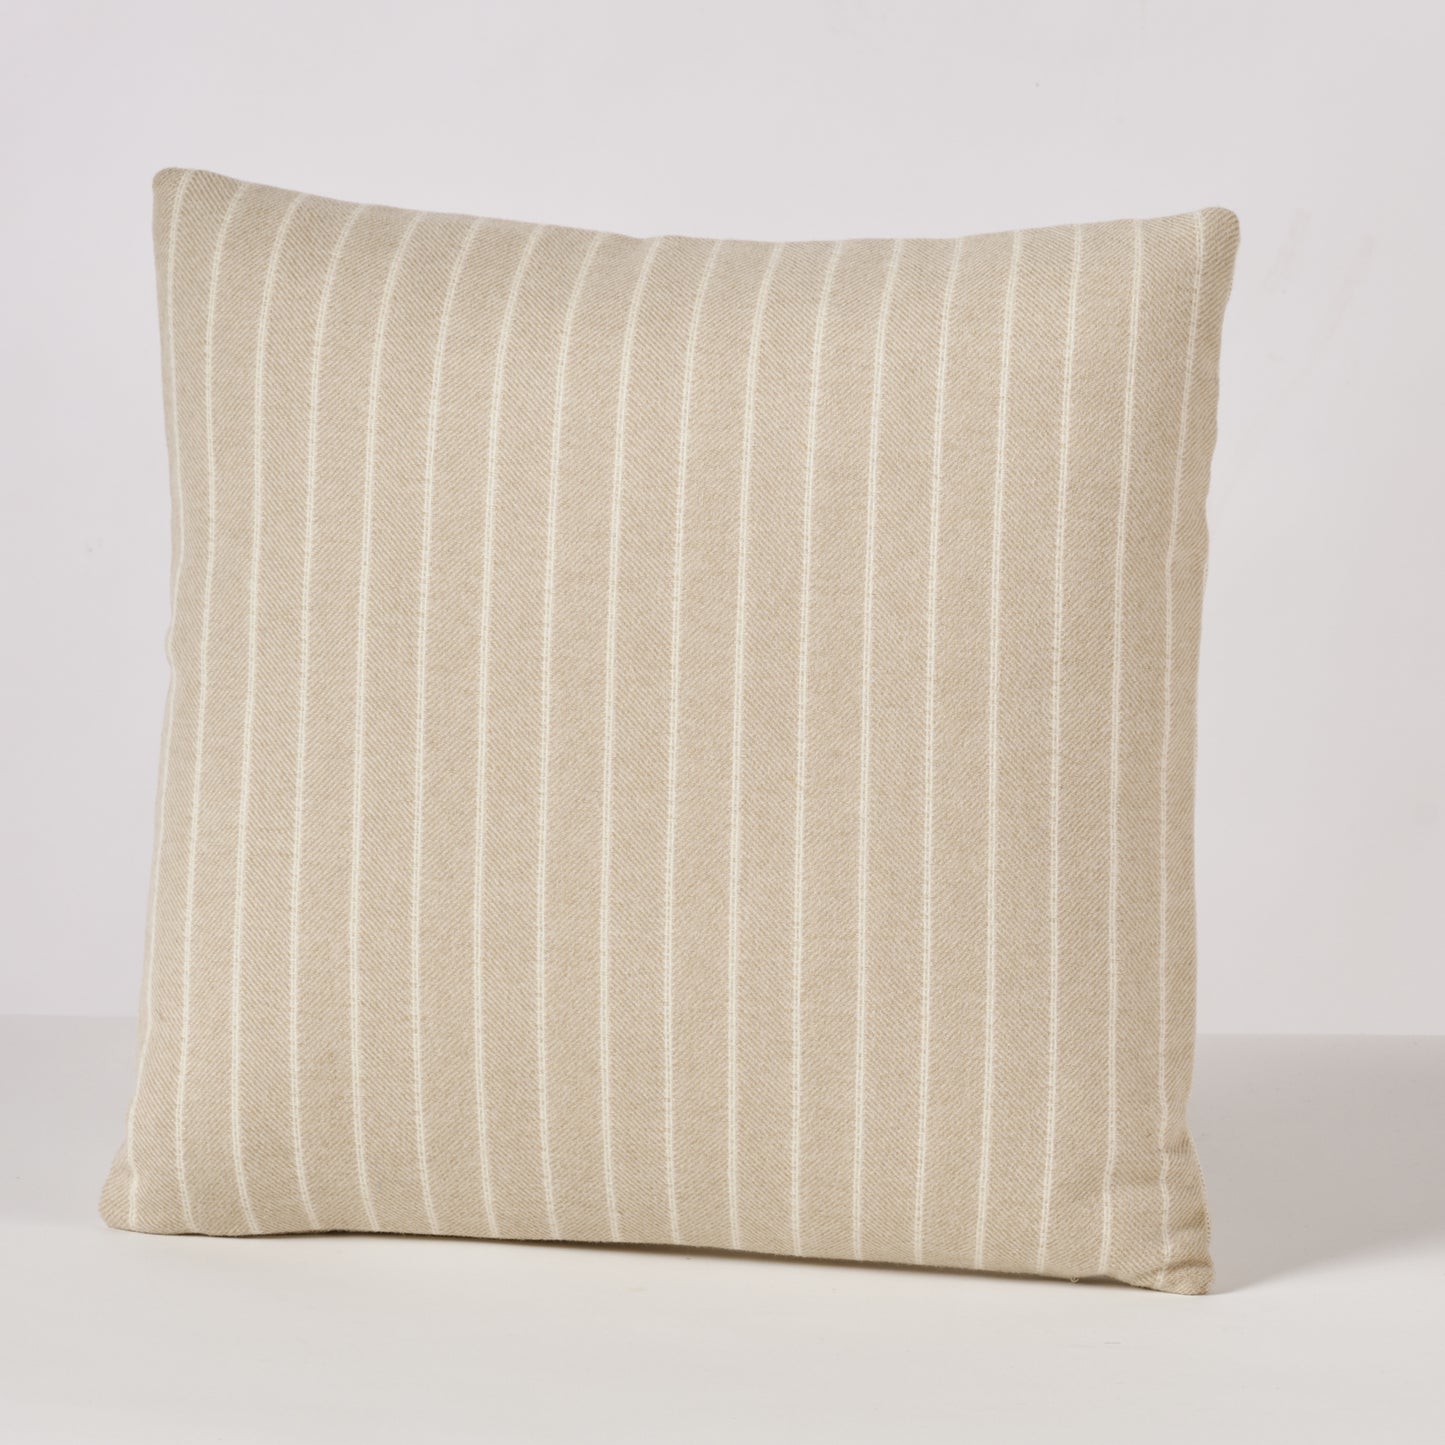 Luxe Pillow 16"x16"